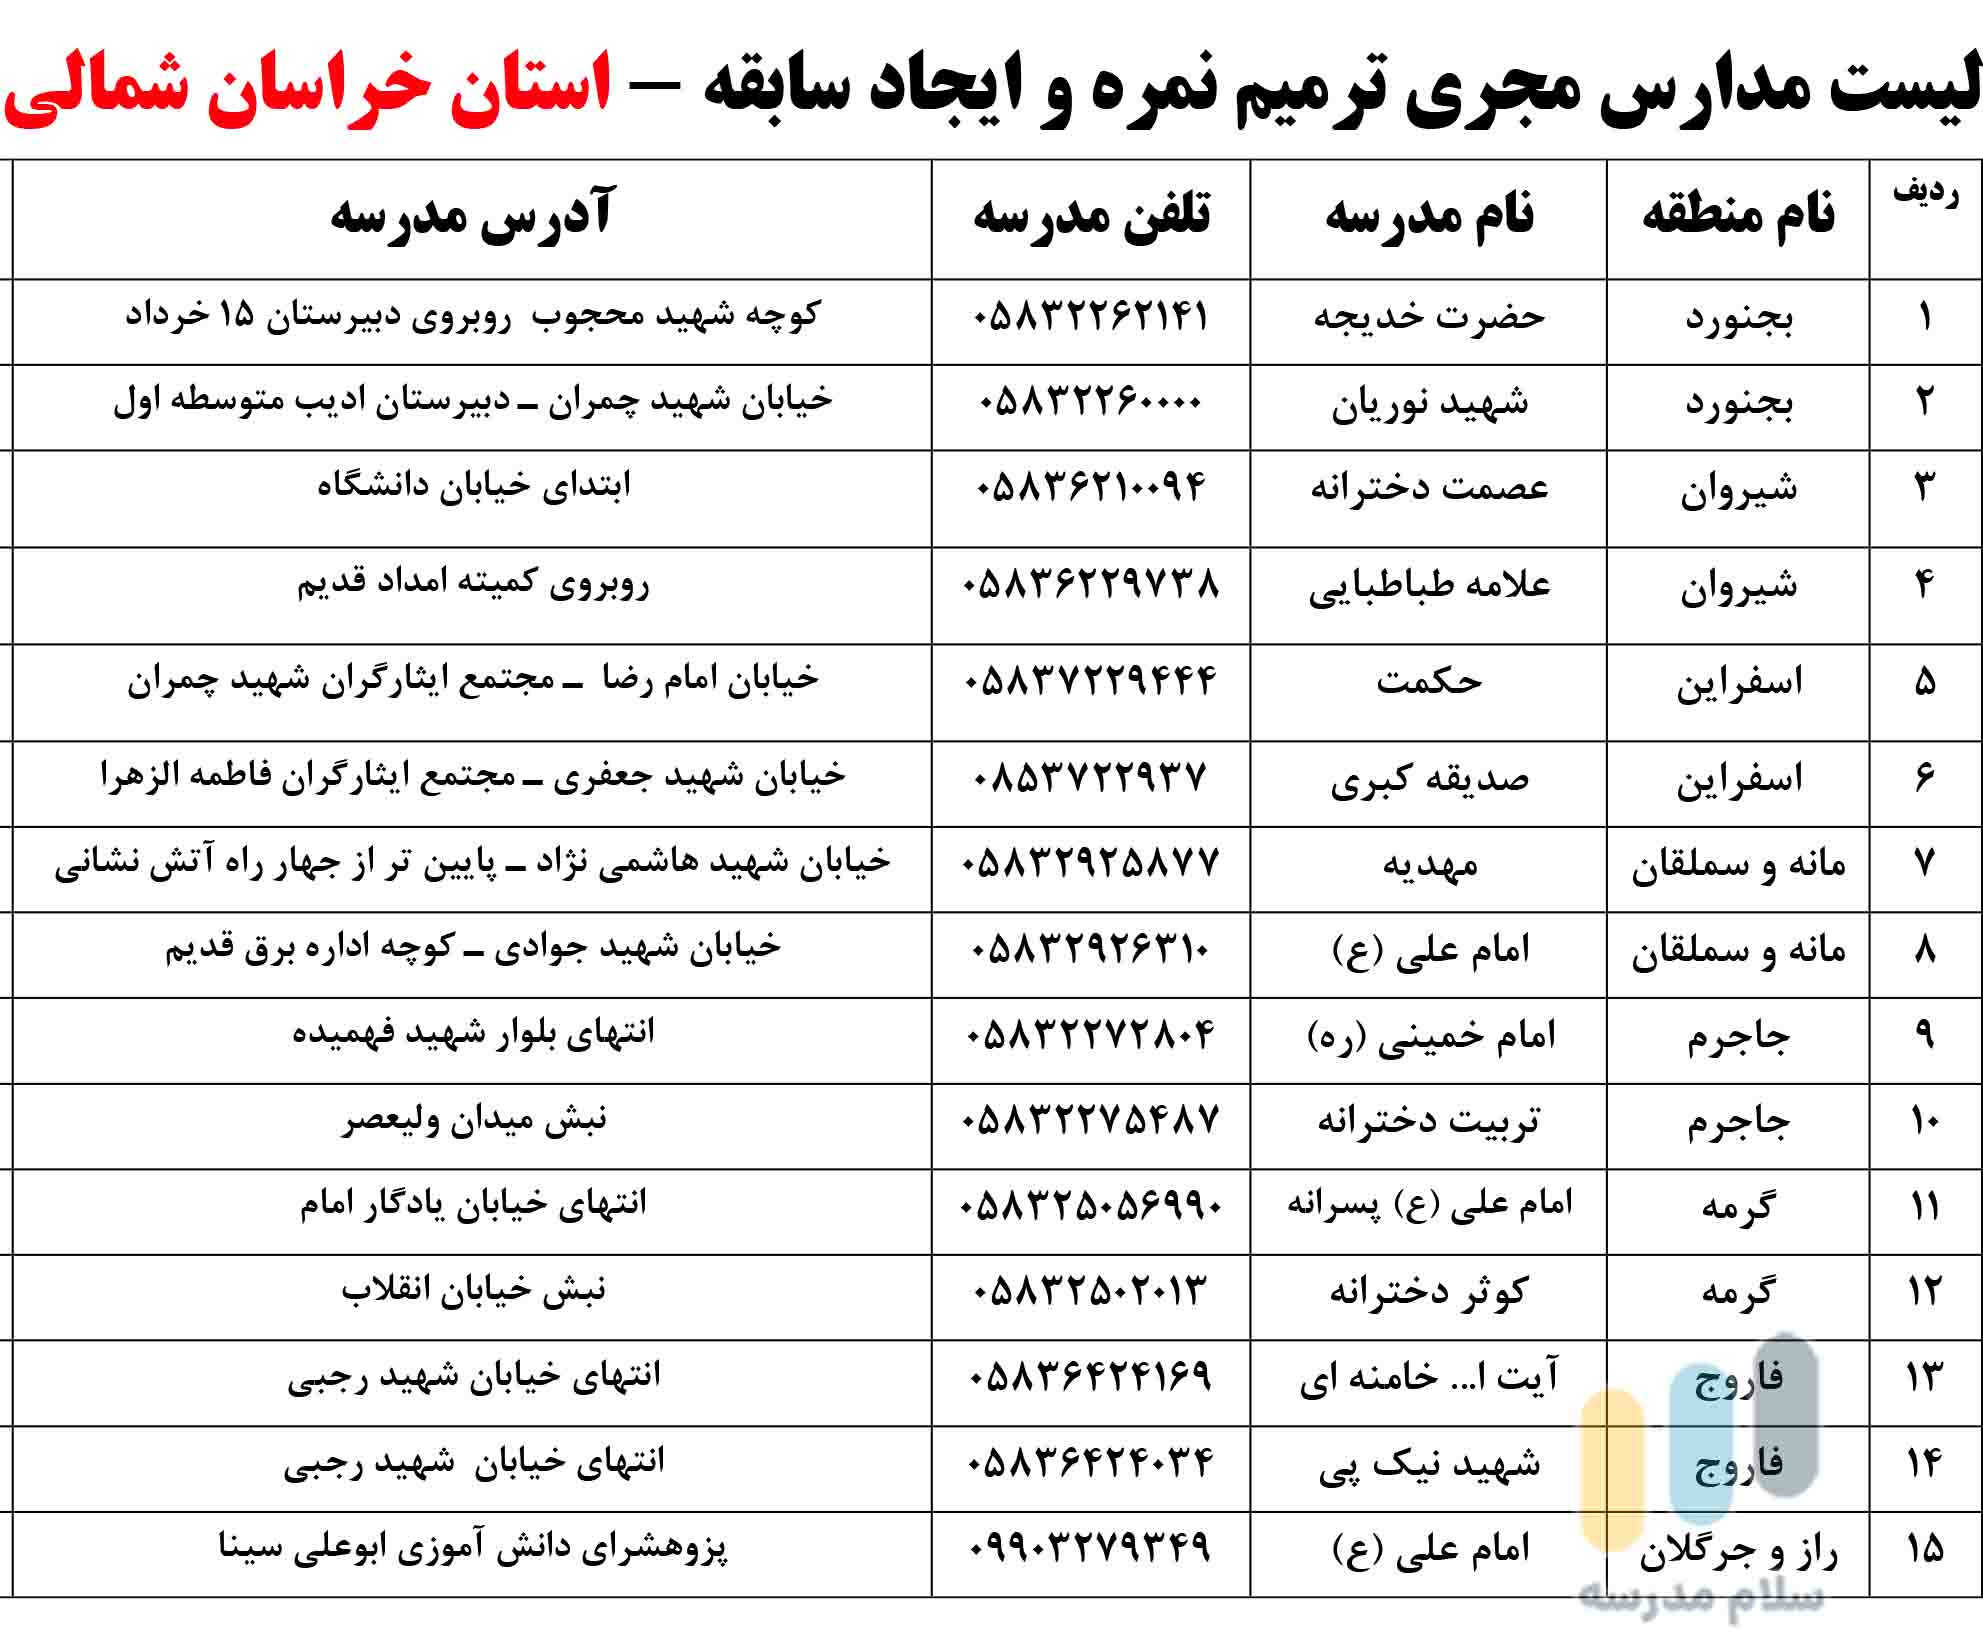 لیست مدارس بزرگسالان داوطلب آزاد مجری ثبت نام امتحان ترمیم نمره در استان خراسان شمالی